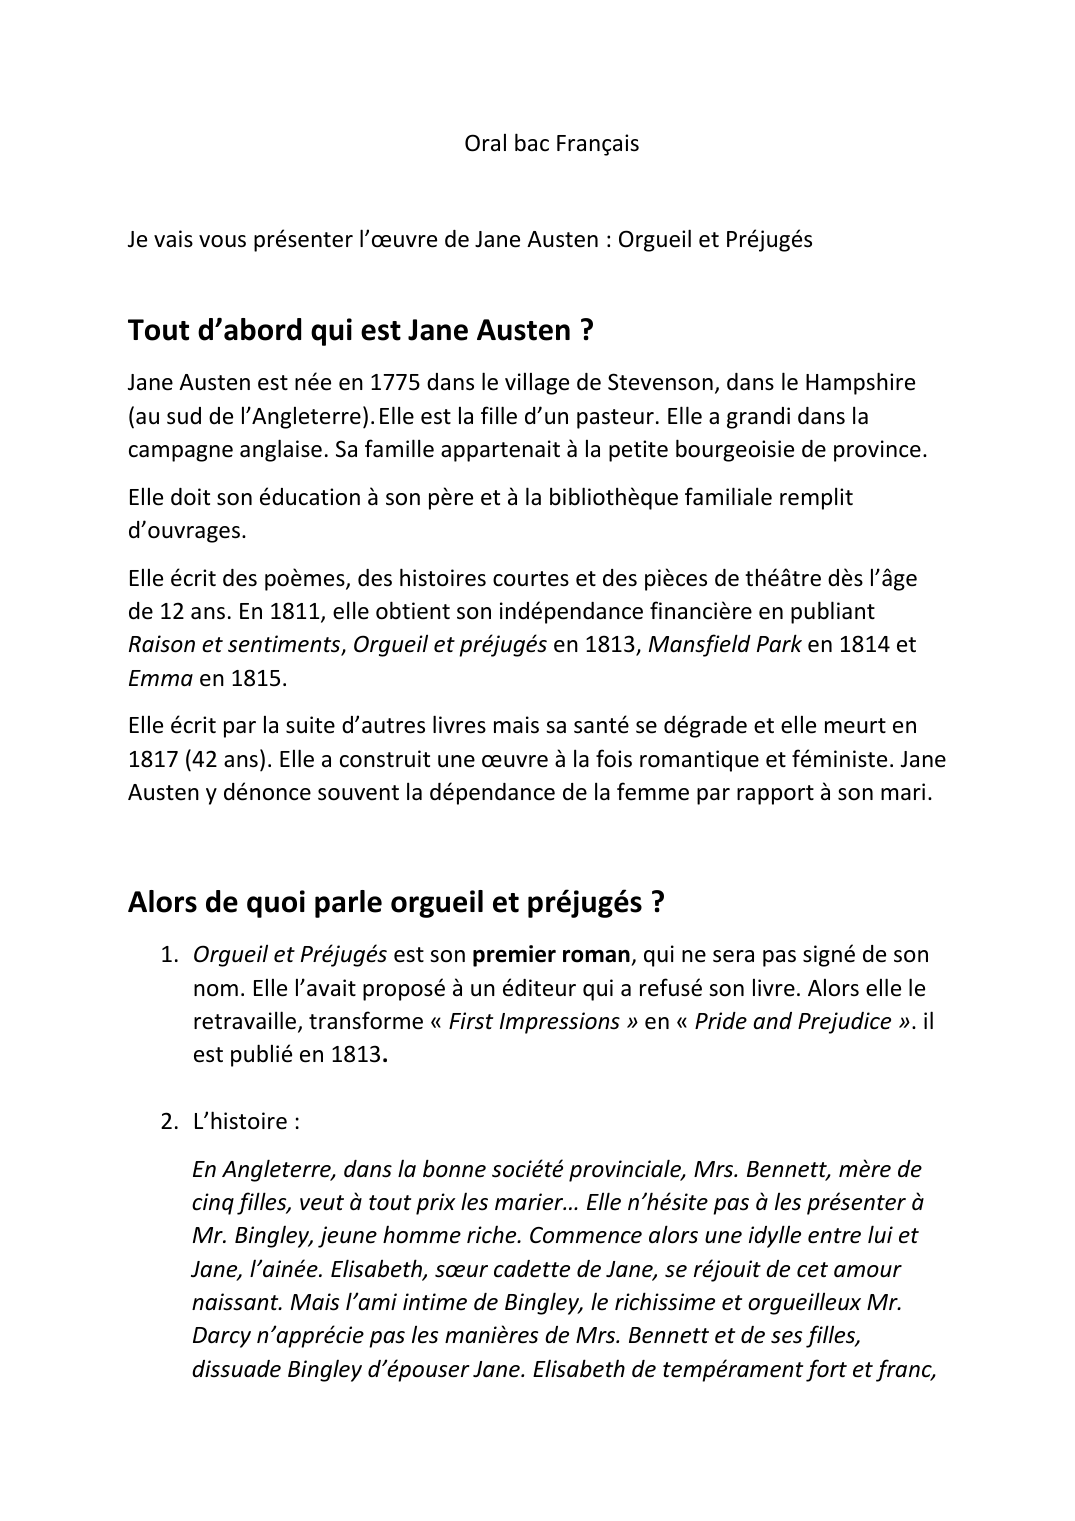 Prévisualisation du document oral bac français sur Orgueil et préjugé de Jane Austen